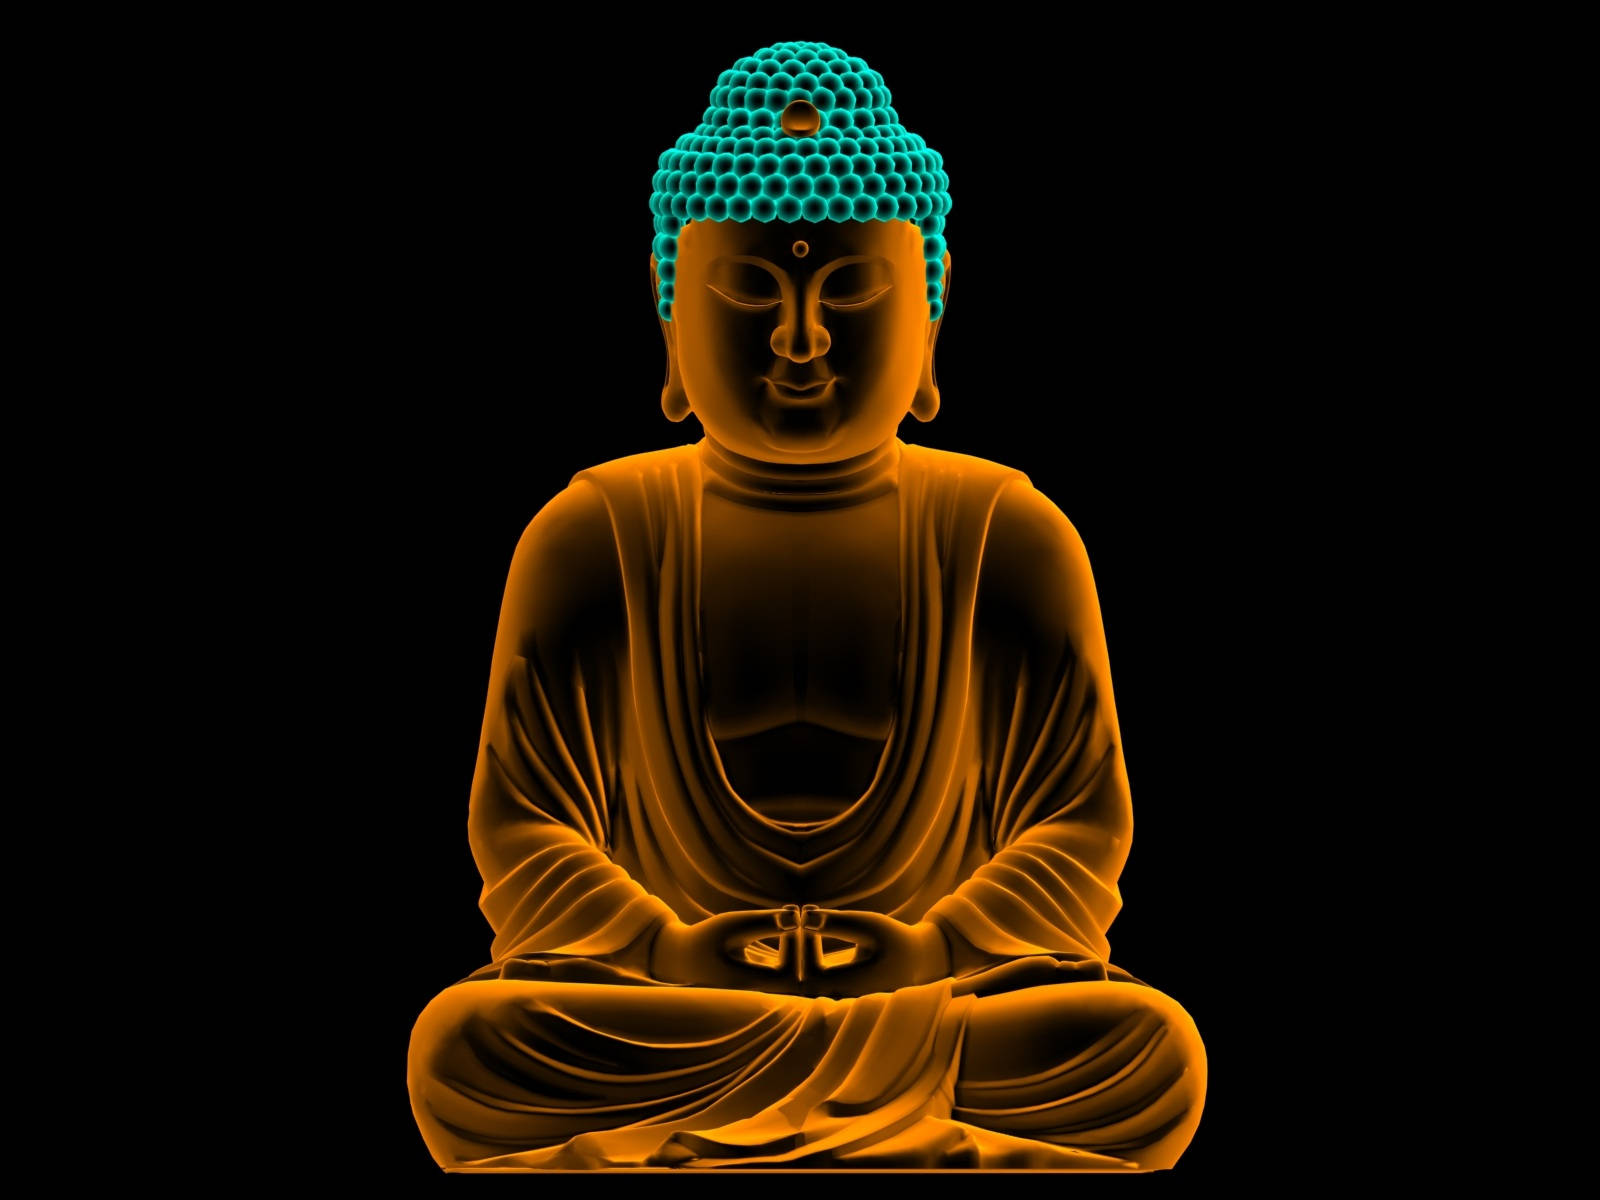 Buddha 3d Luminous Orange Statue